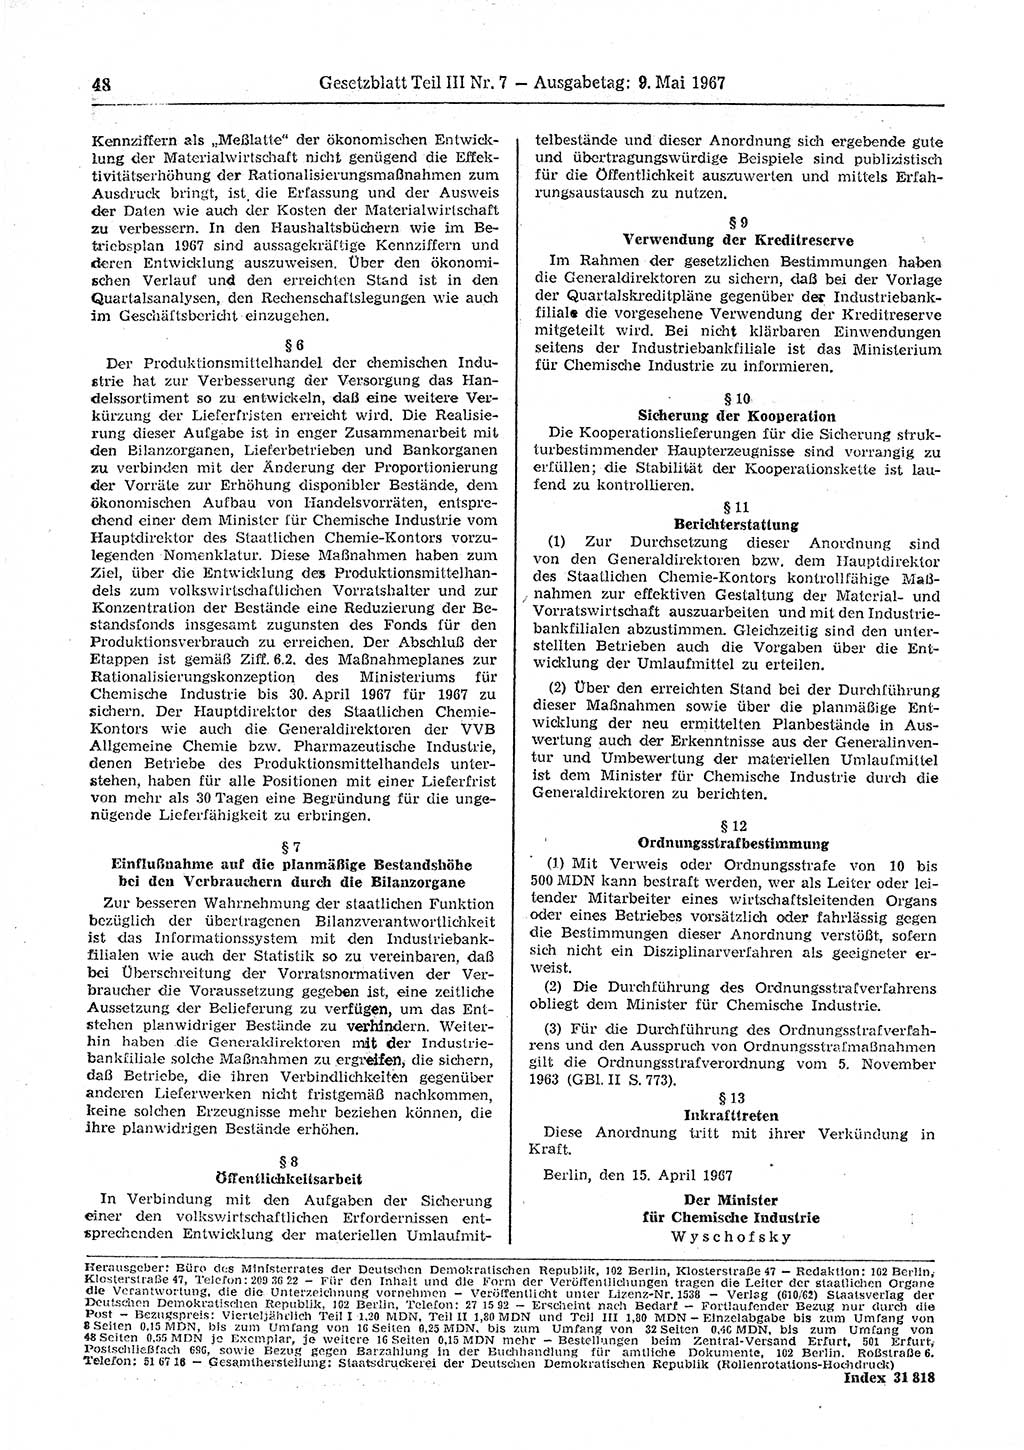 Gesetzblatt (GBl.) der Deutschen Demokratischen Republik (DDR) Teil ⅠⅠⅠ 1967, Seite 48 (GBl. DDR ⅠⅠⅠ 1967, S. 48)